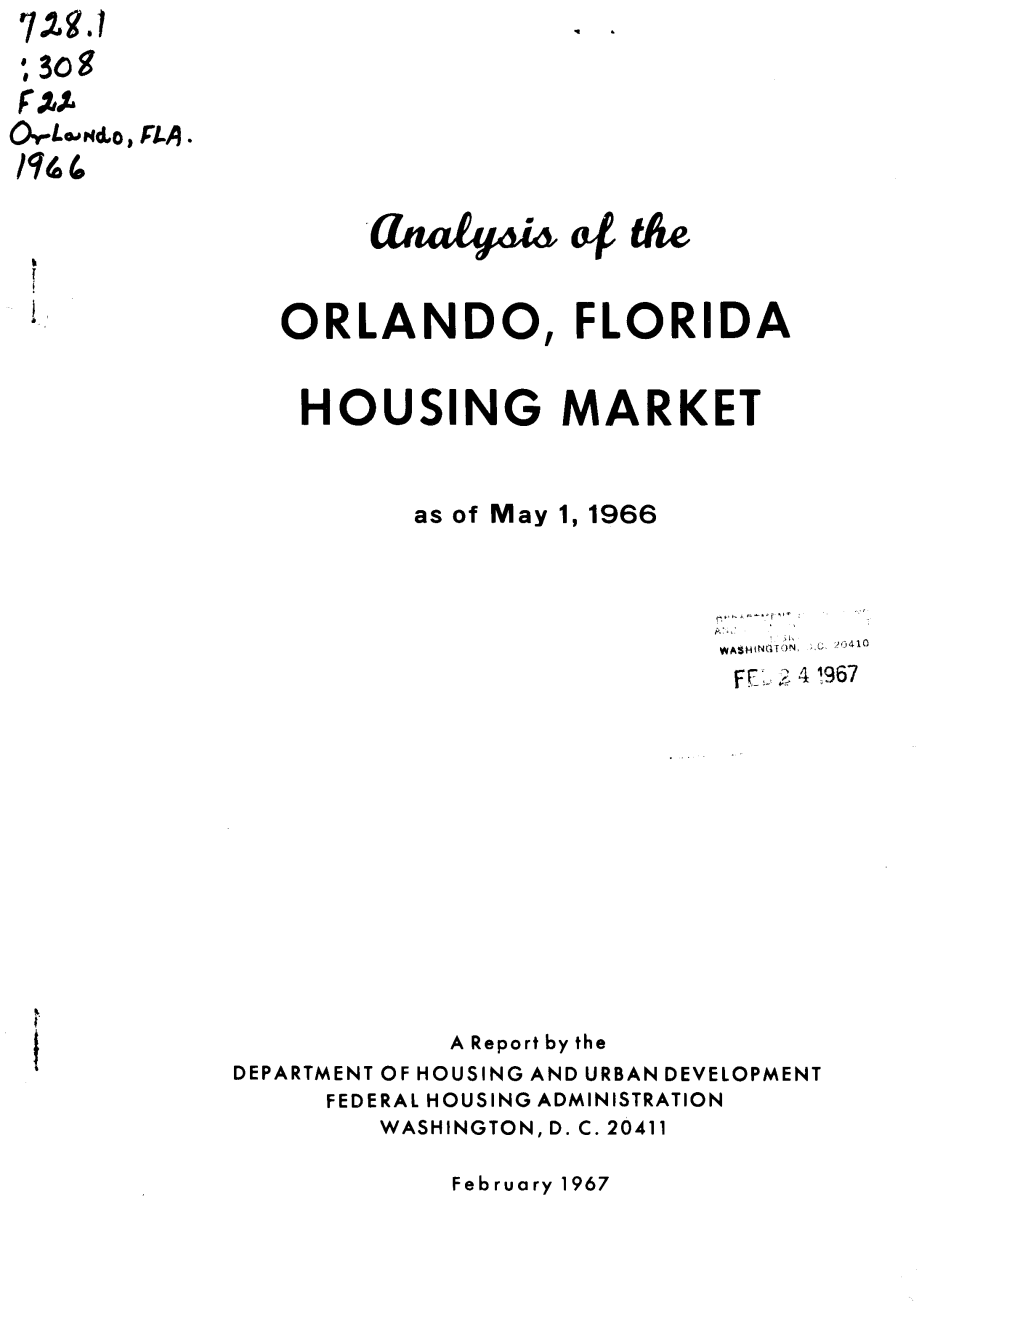 Analysis of the Orlando, Florida Housing Market